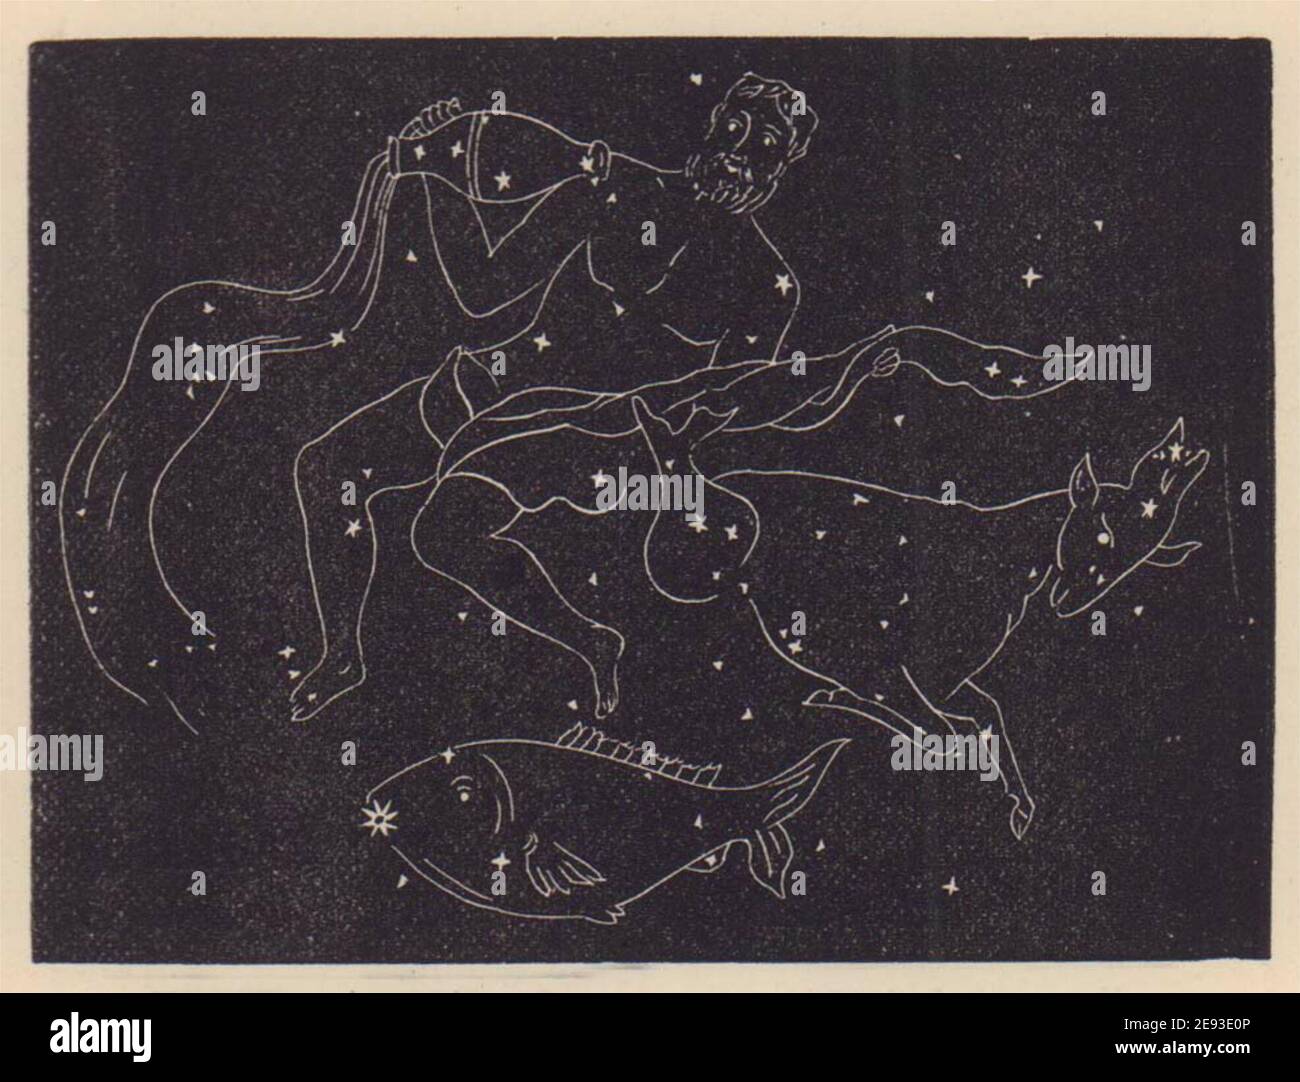 Aquarius, Capricornus, and Piscis Australis. Star chart. SMALL. PROCTOR 1882 Stock Photo